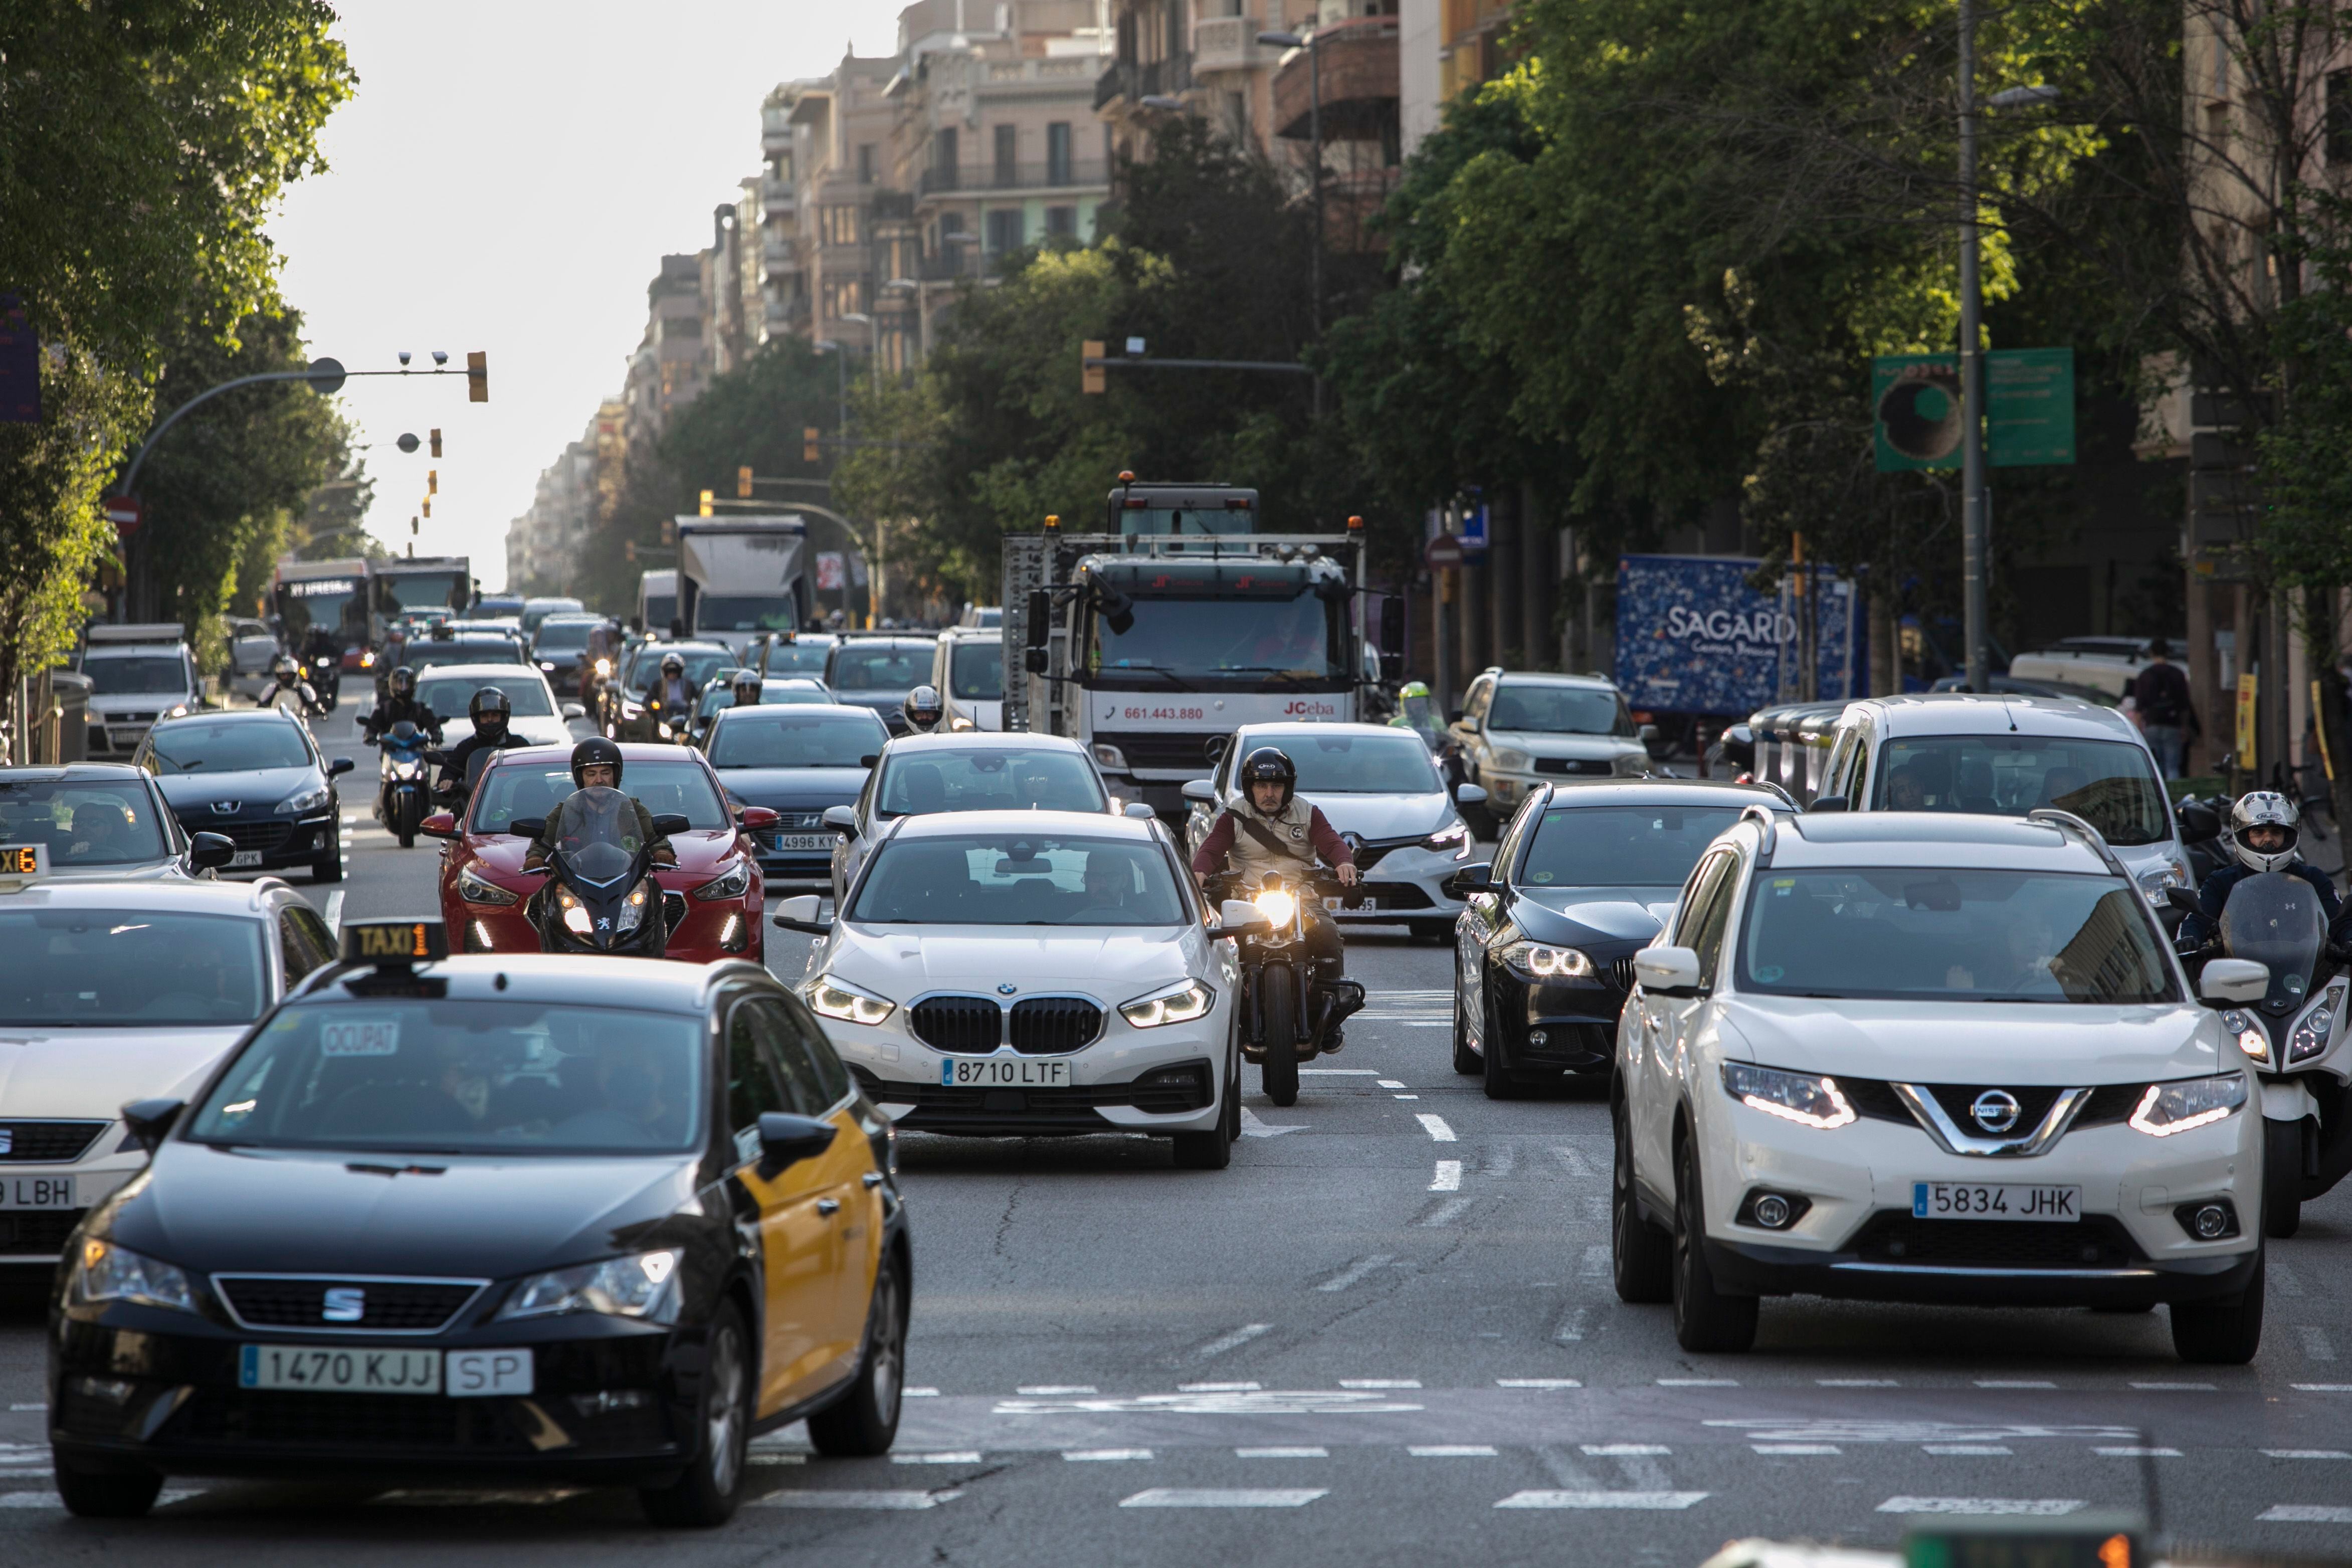 12/05/2022 - Barcelona - Reportaje sobre movilidad en Barcewlona. Recorrido en coche, moto, bici y transporte publico desde el Forum hasta la Plaza de España. Foto: Massimiliano Minocri